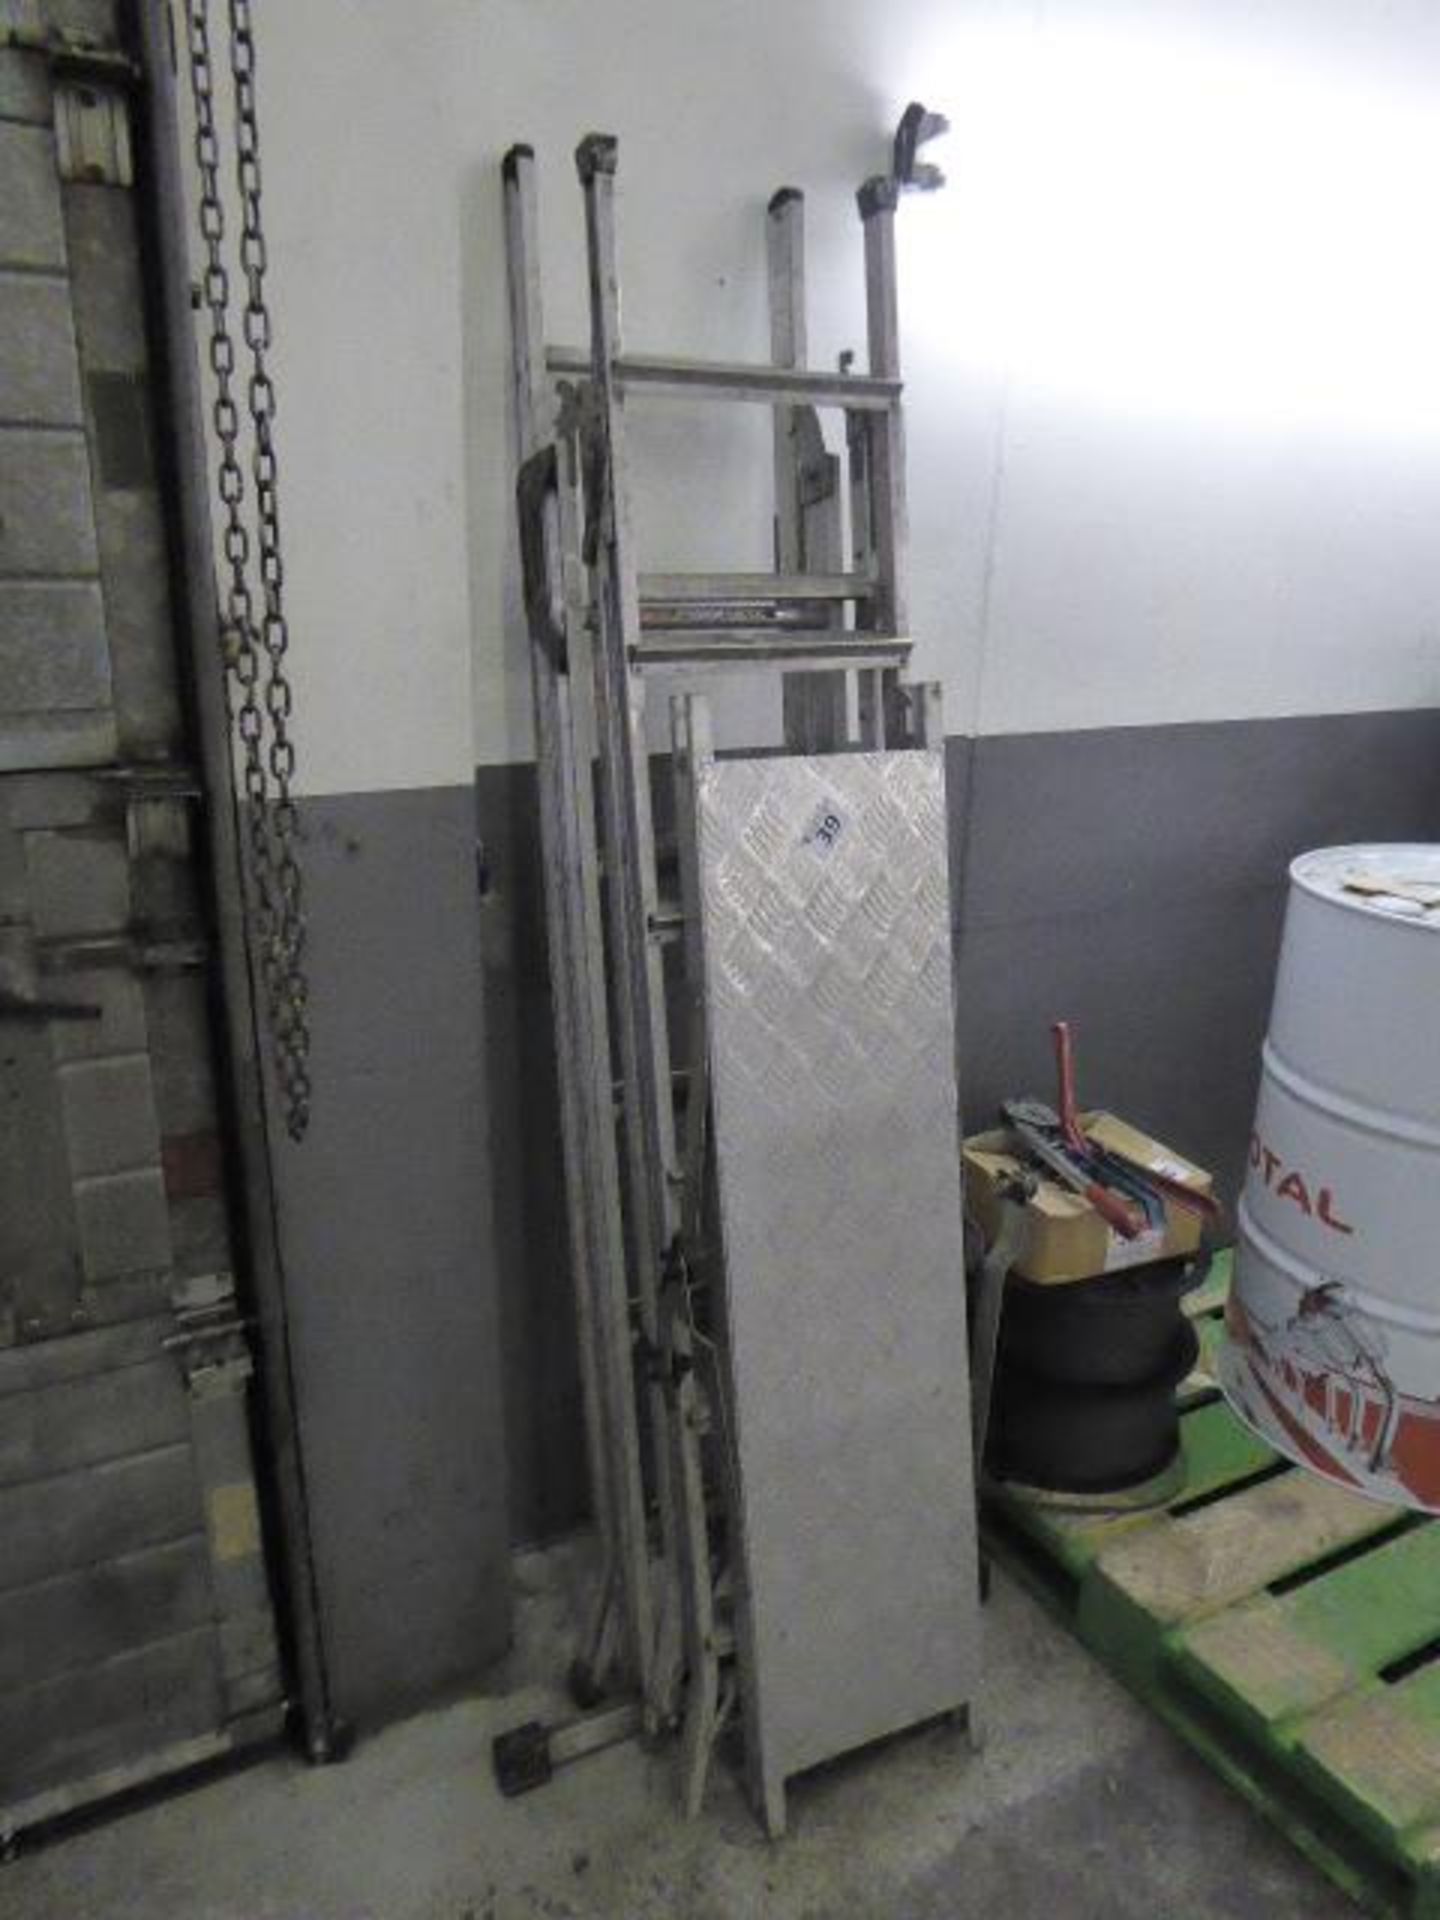 2 aluminium folding ladders, one with platform - Image 2 of 2